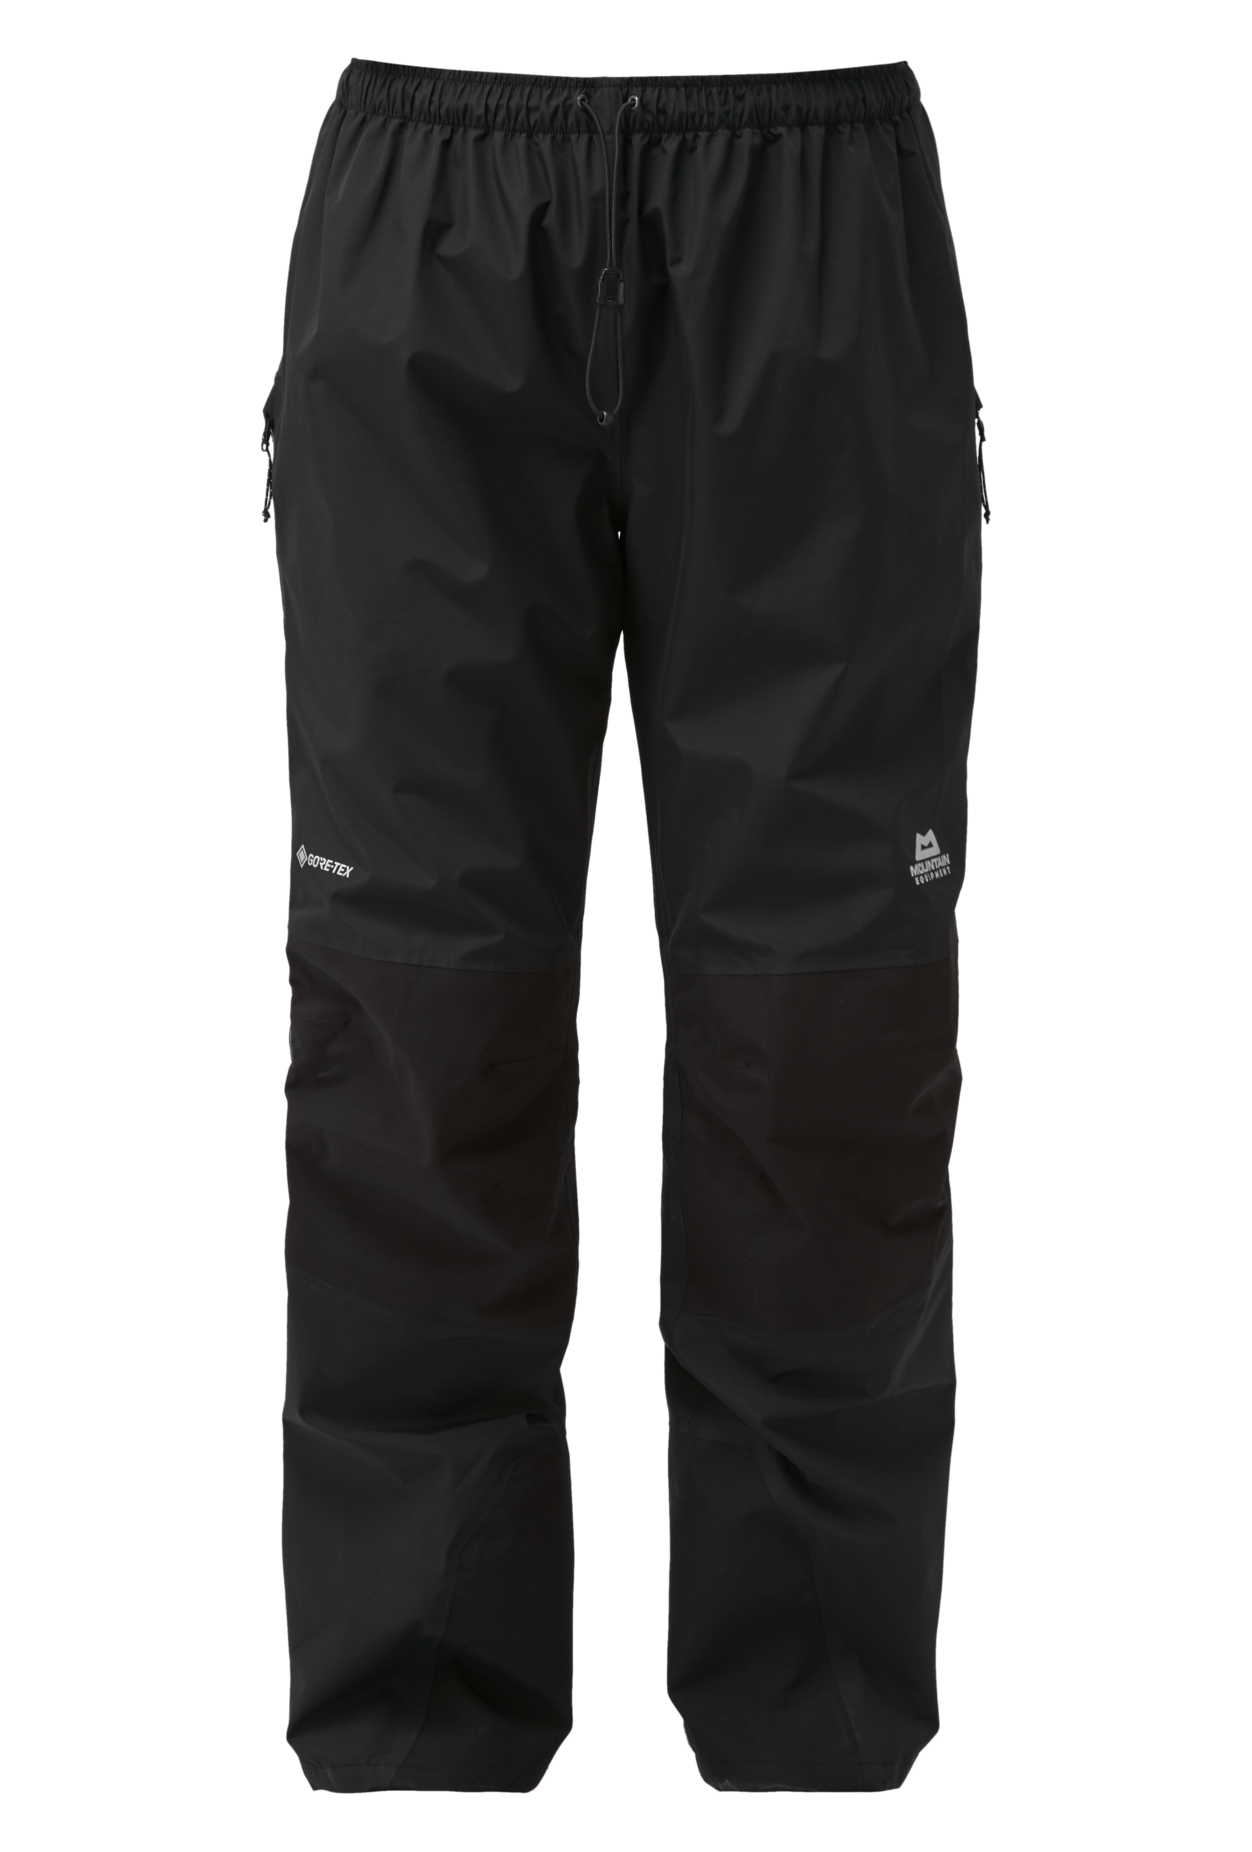 Mountain Equipment Saltoro Pant - Pantaloni impermeabili - Donna